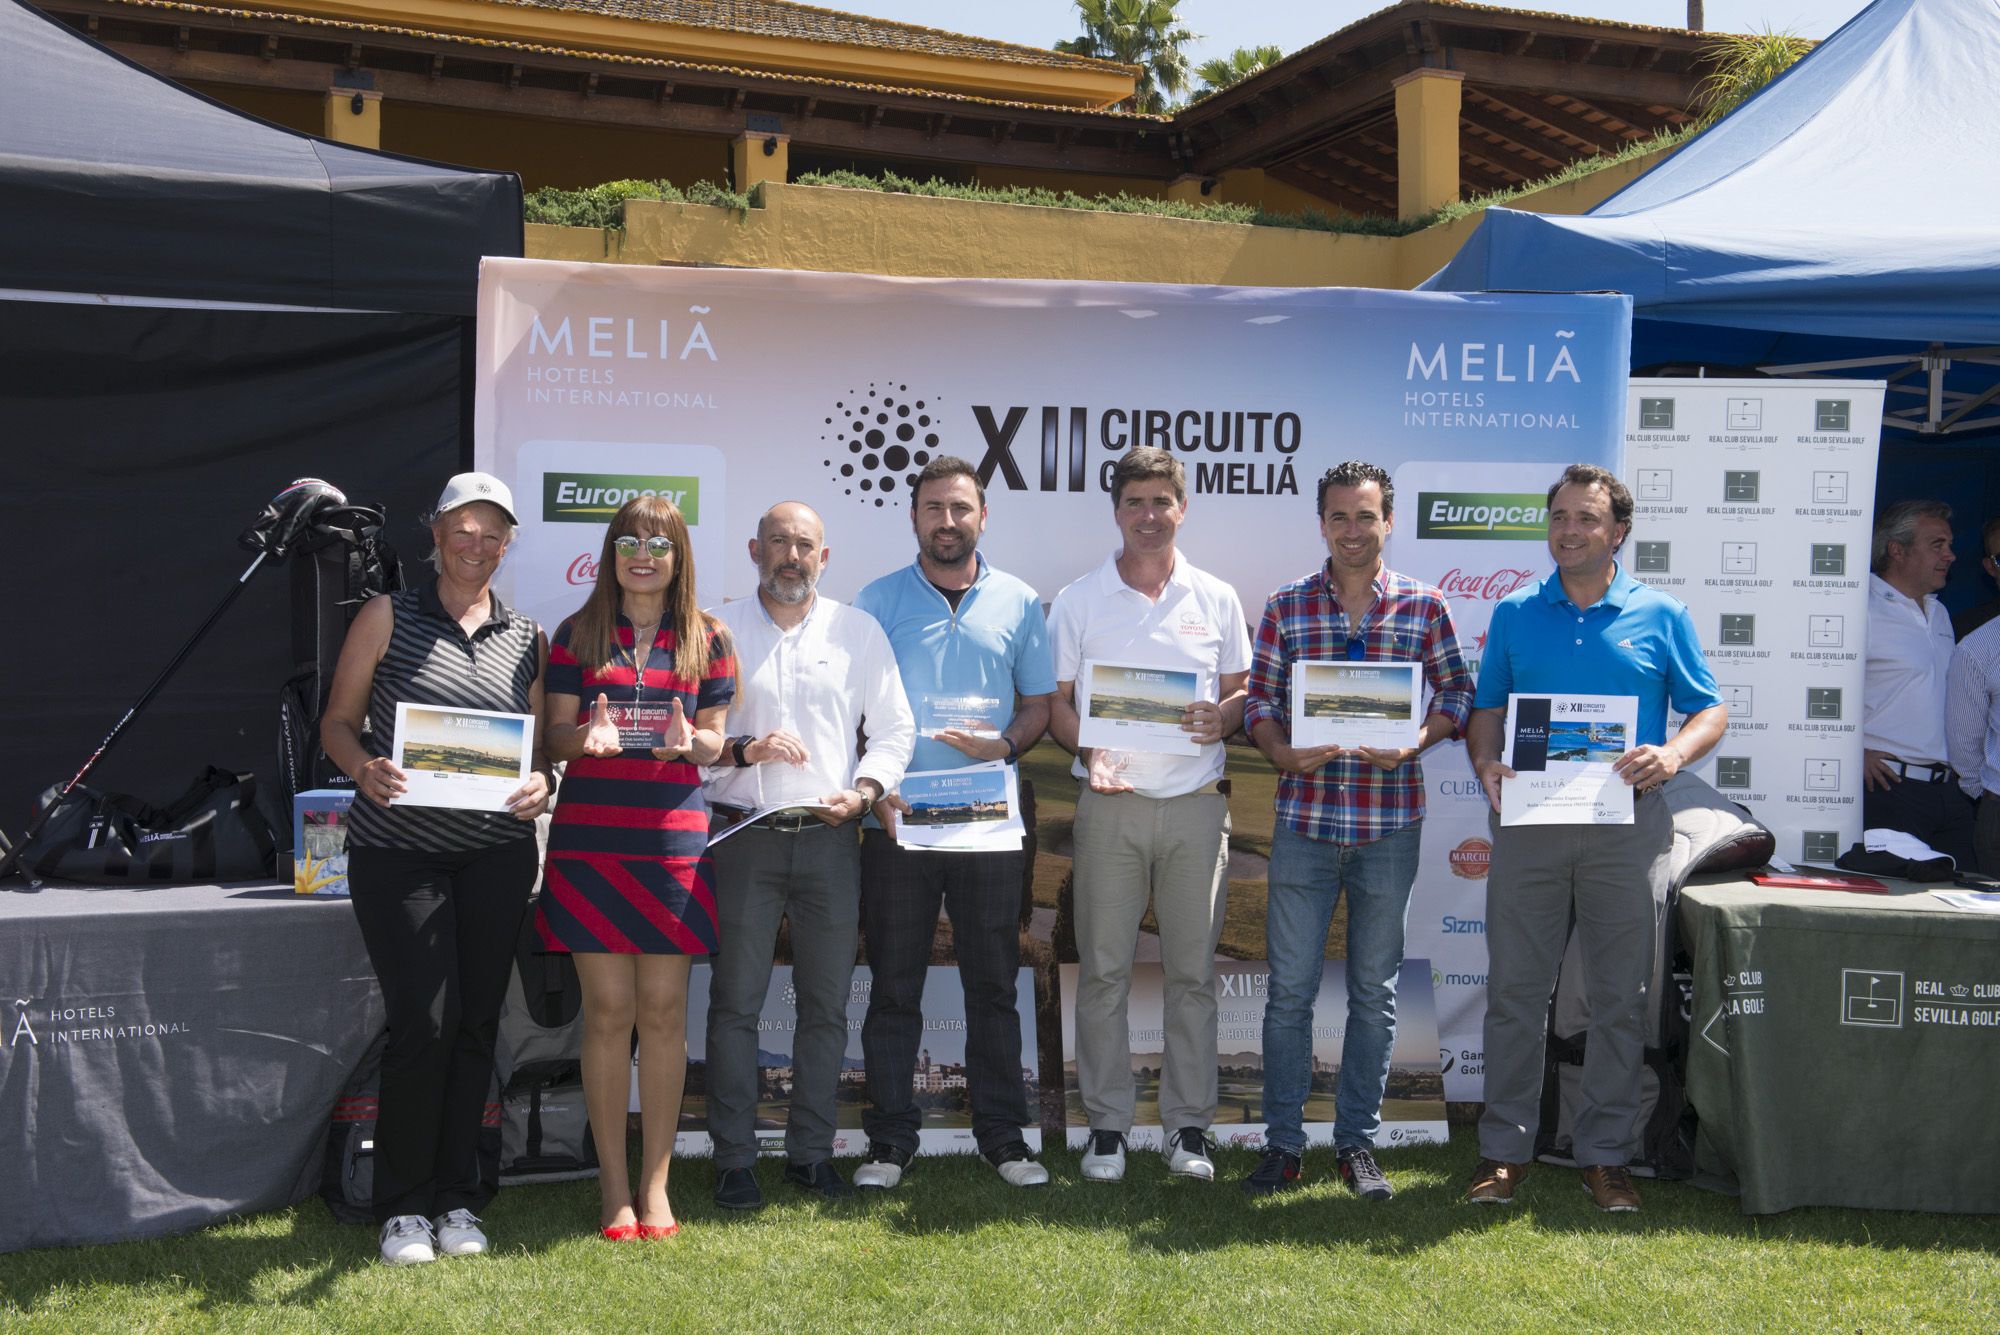 El XII Circuito de golf Melia Hotels International comienza por todo lo alto en el Real Club Sevilla Golf